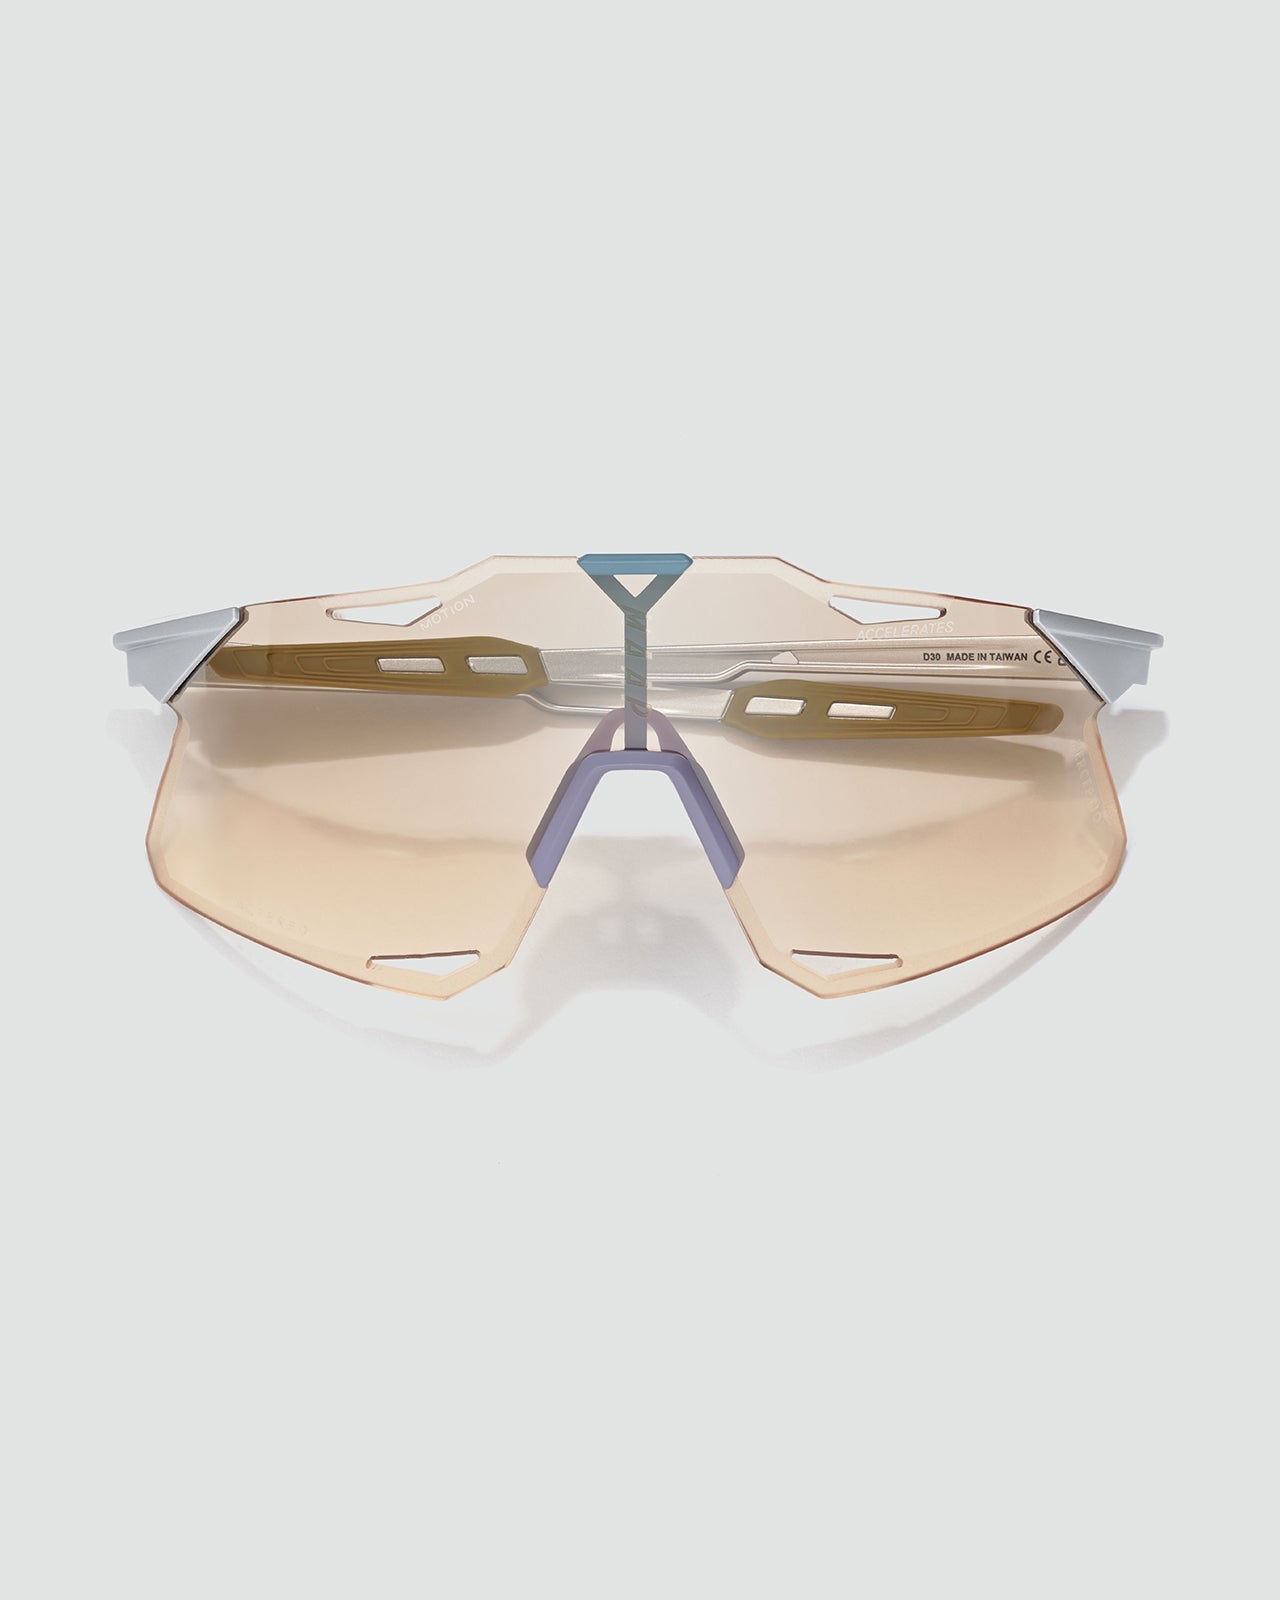 MAAP x 100% Hypercraft Sunglasses - Silver